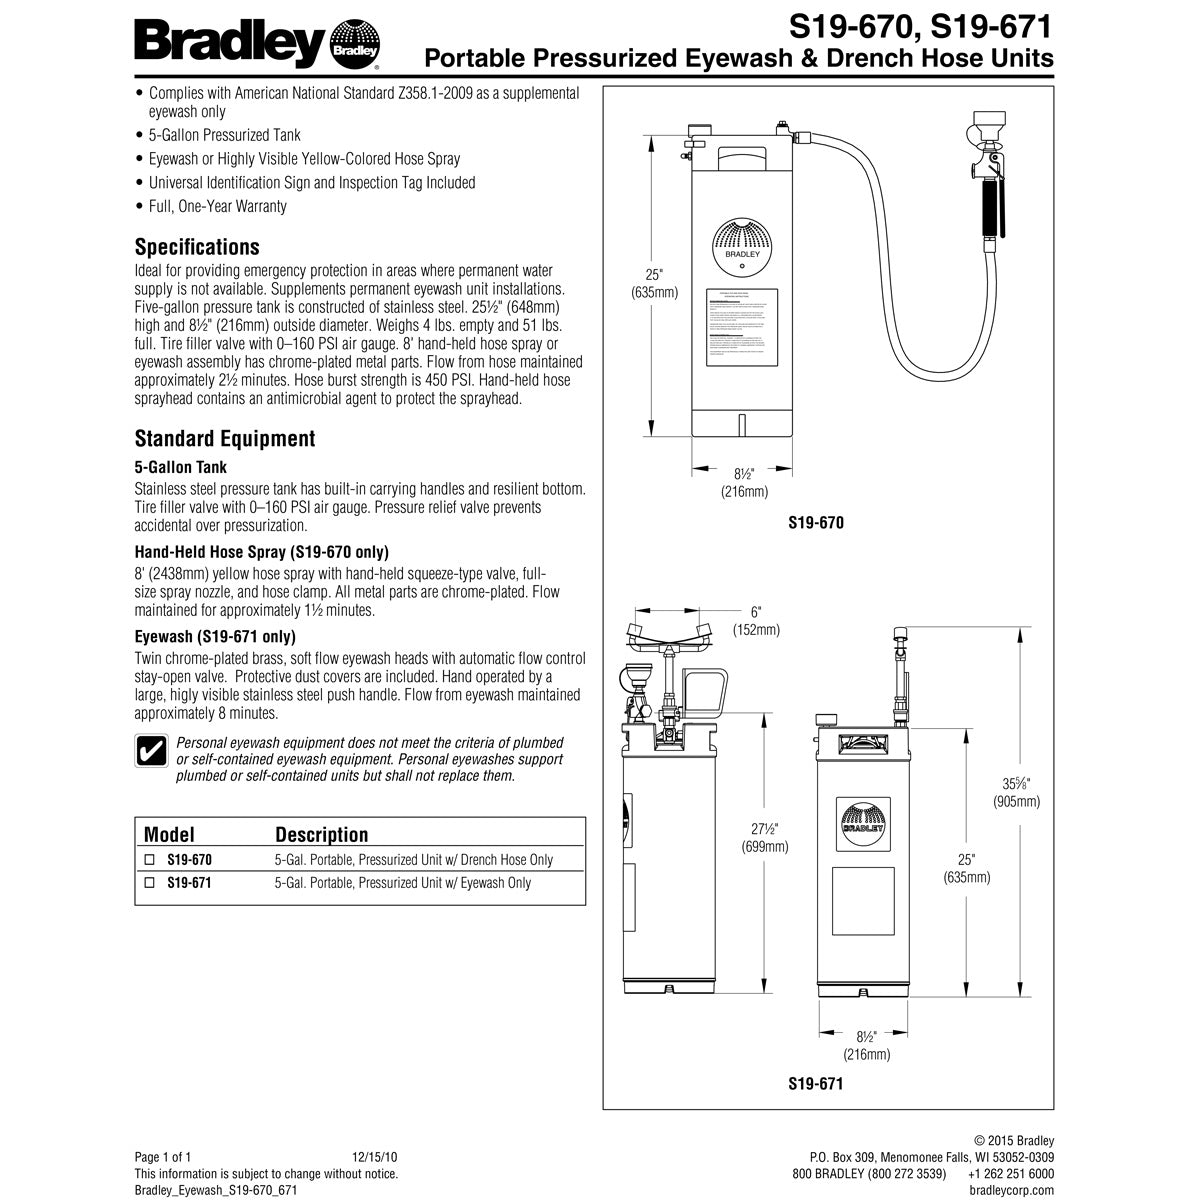 Bradley S19-671 Portable Eyewash 5 Gallon w/ Eyewash Only